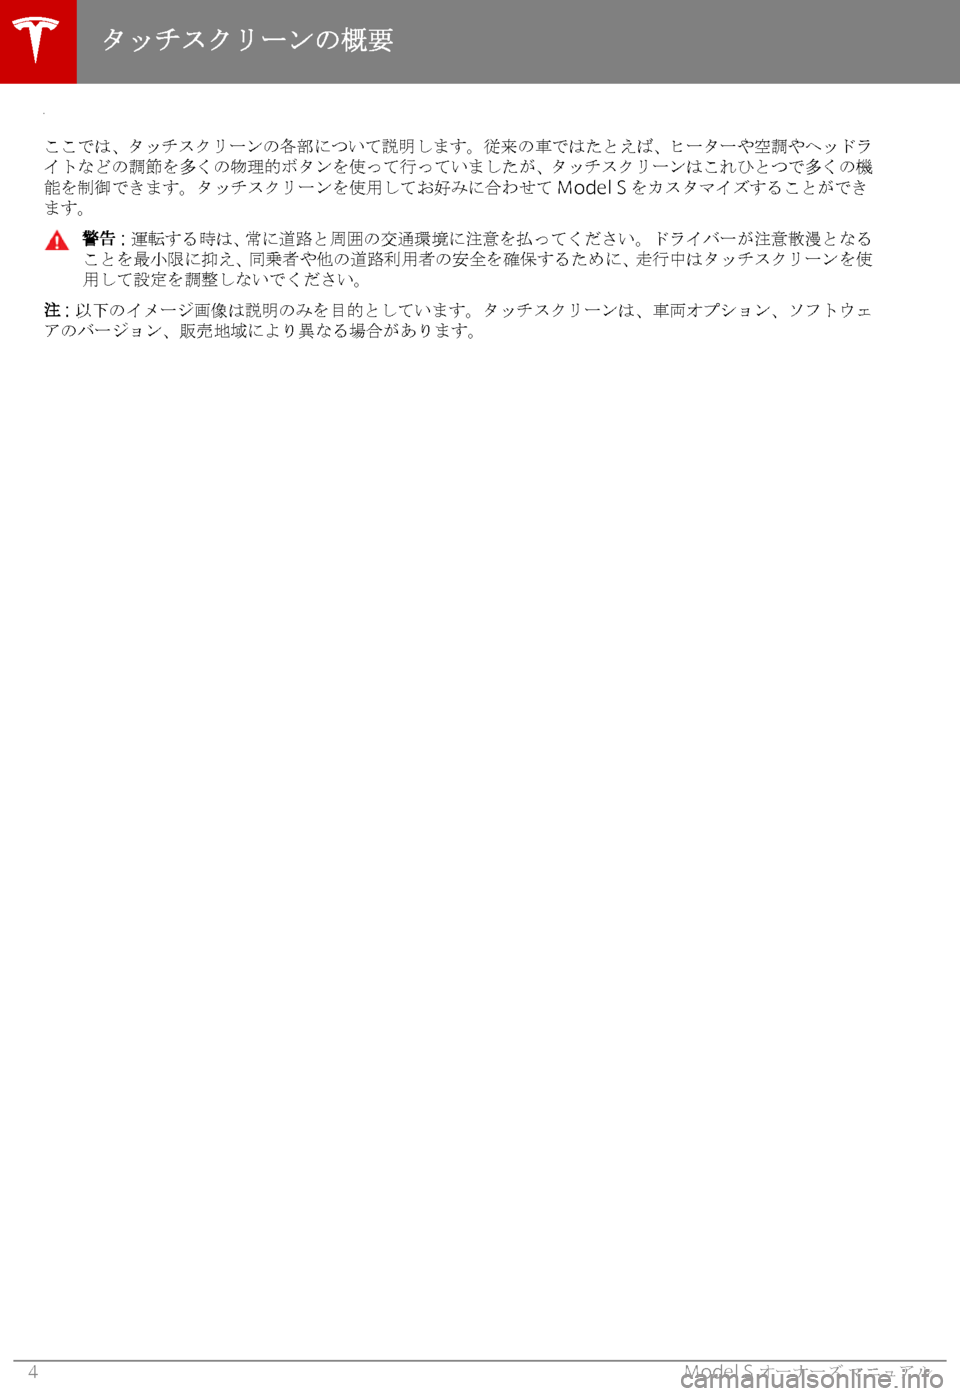 TESLA MODEL S 2019  取扱説明書 (in Japanese) 